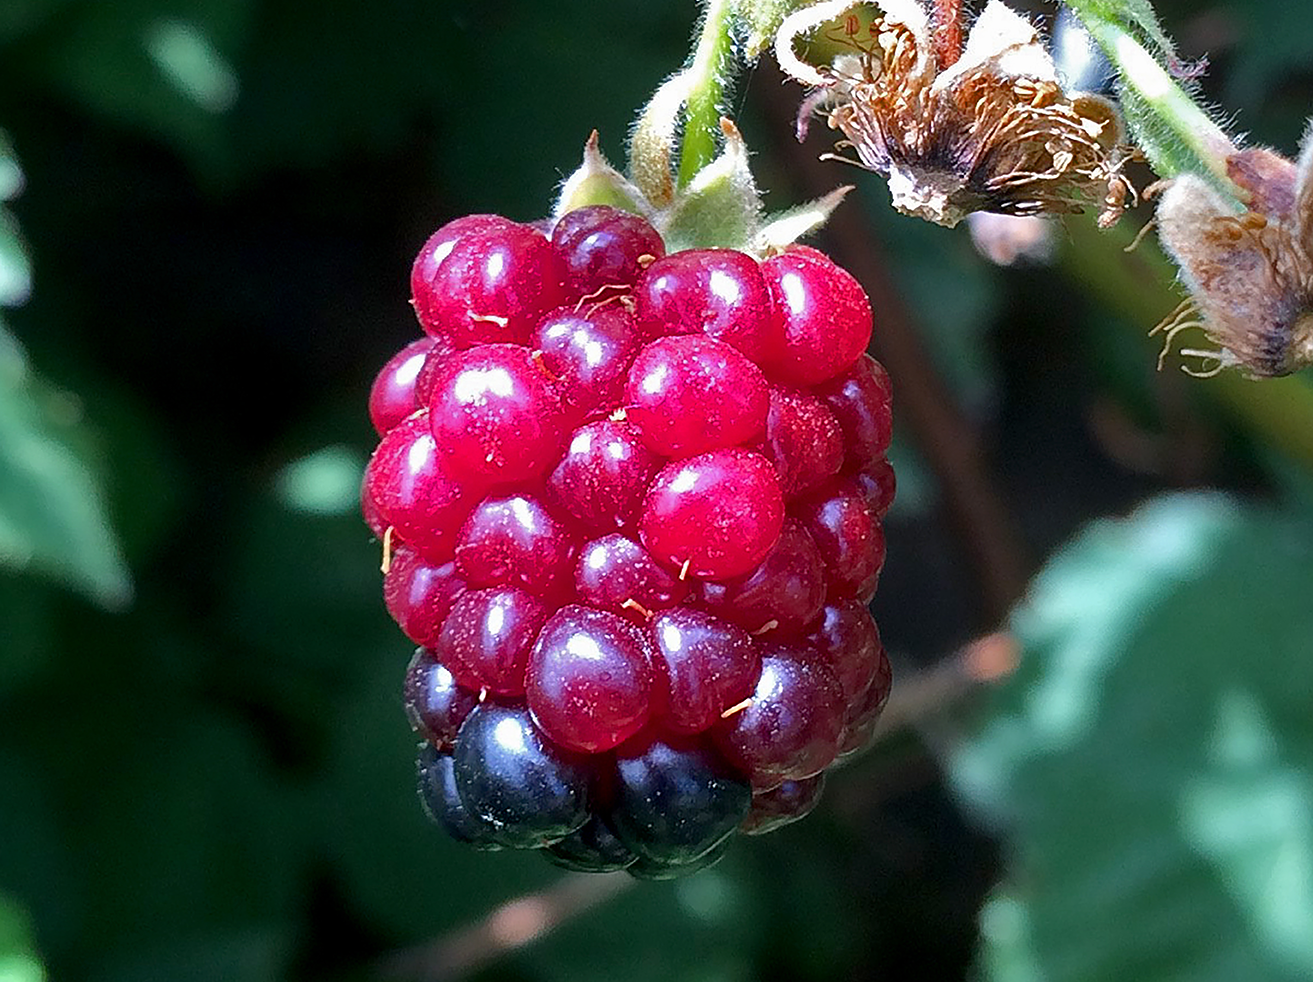 Redberry mite damage on mature blackberry